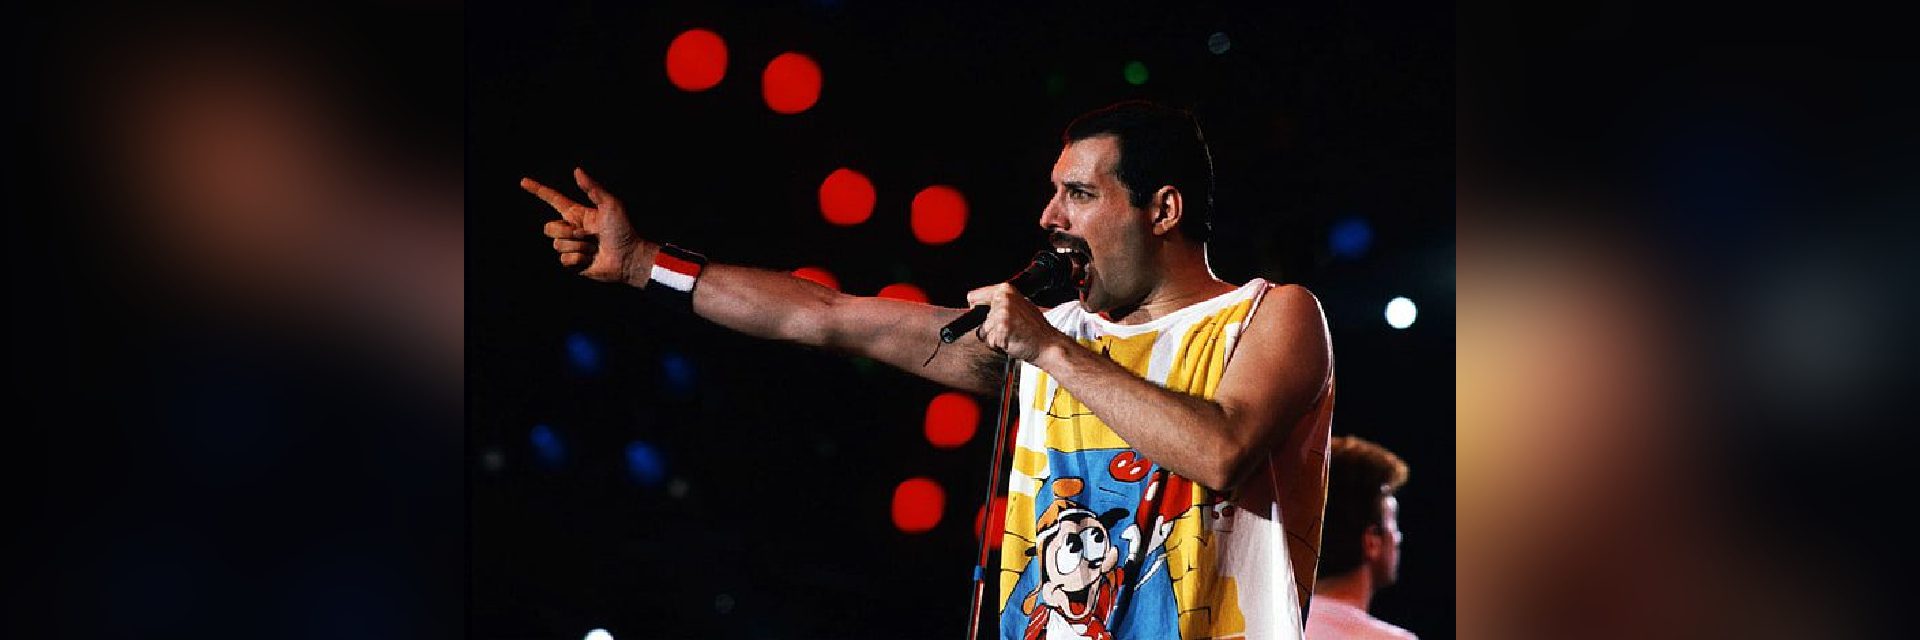 Rockstar Freddie Mercury's